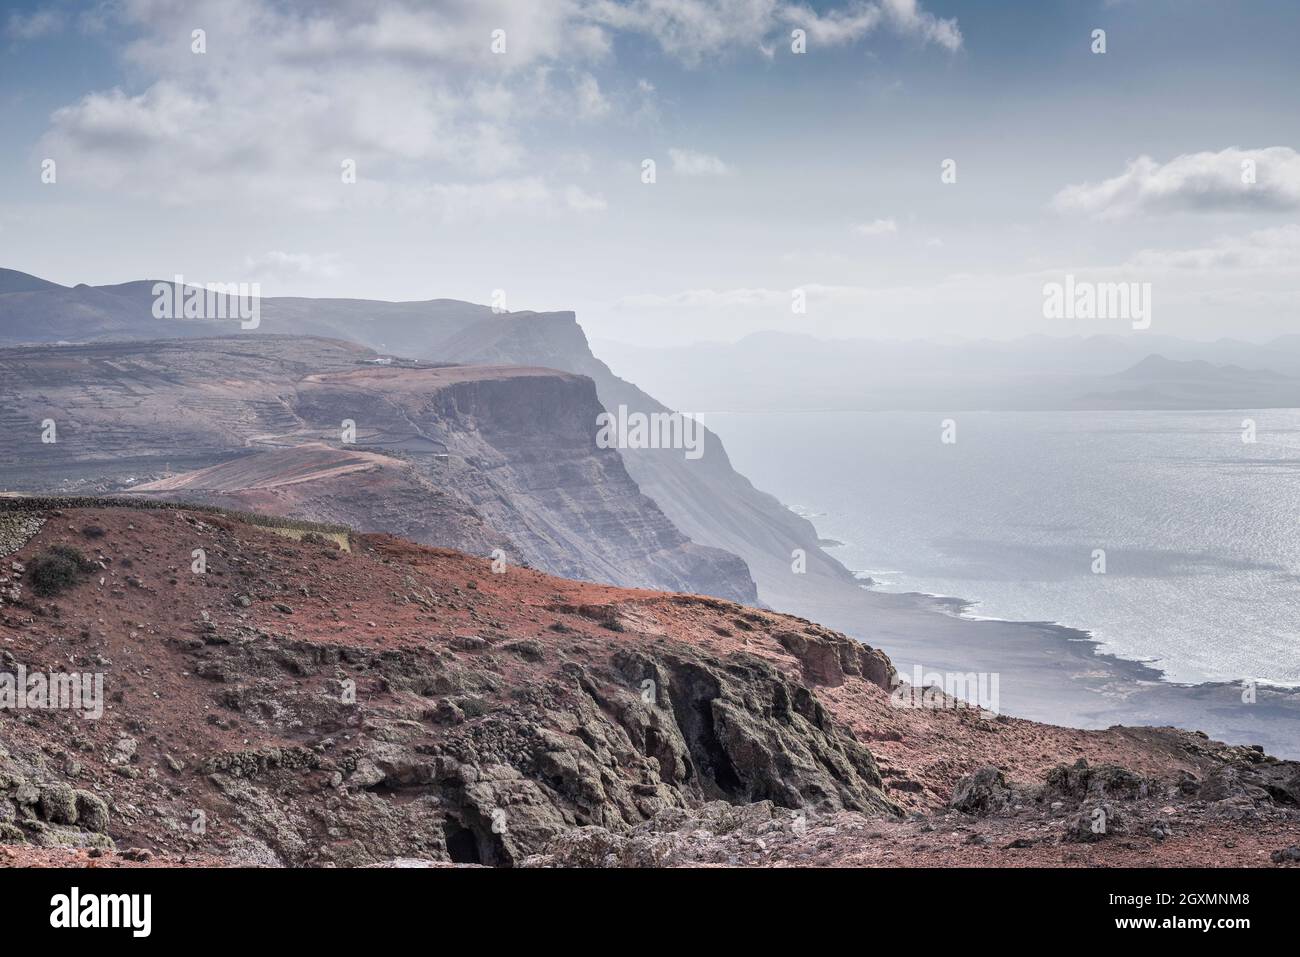 View of northern Lanzarote coastline from Mirador del Rio vista point (Lanzarote, Canary Islands) Stock Photo